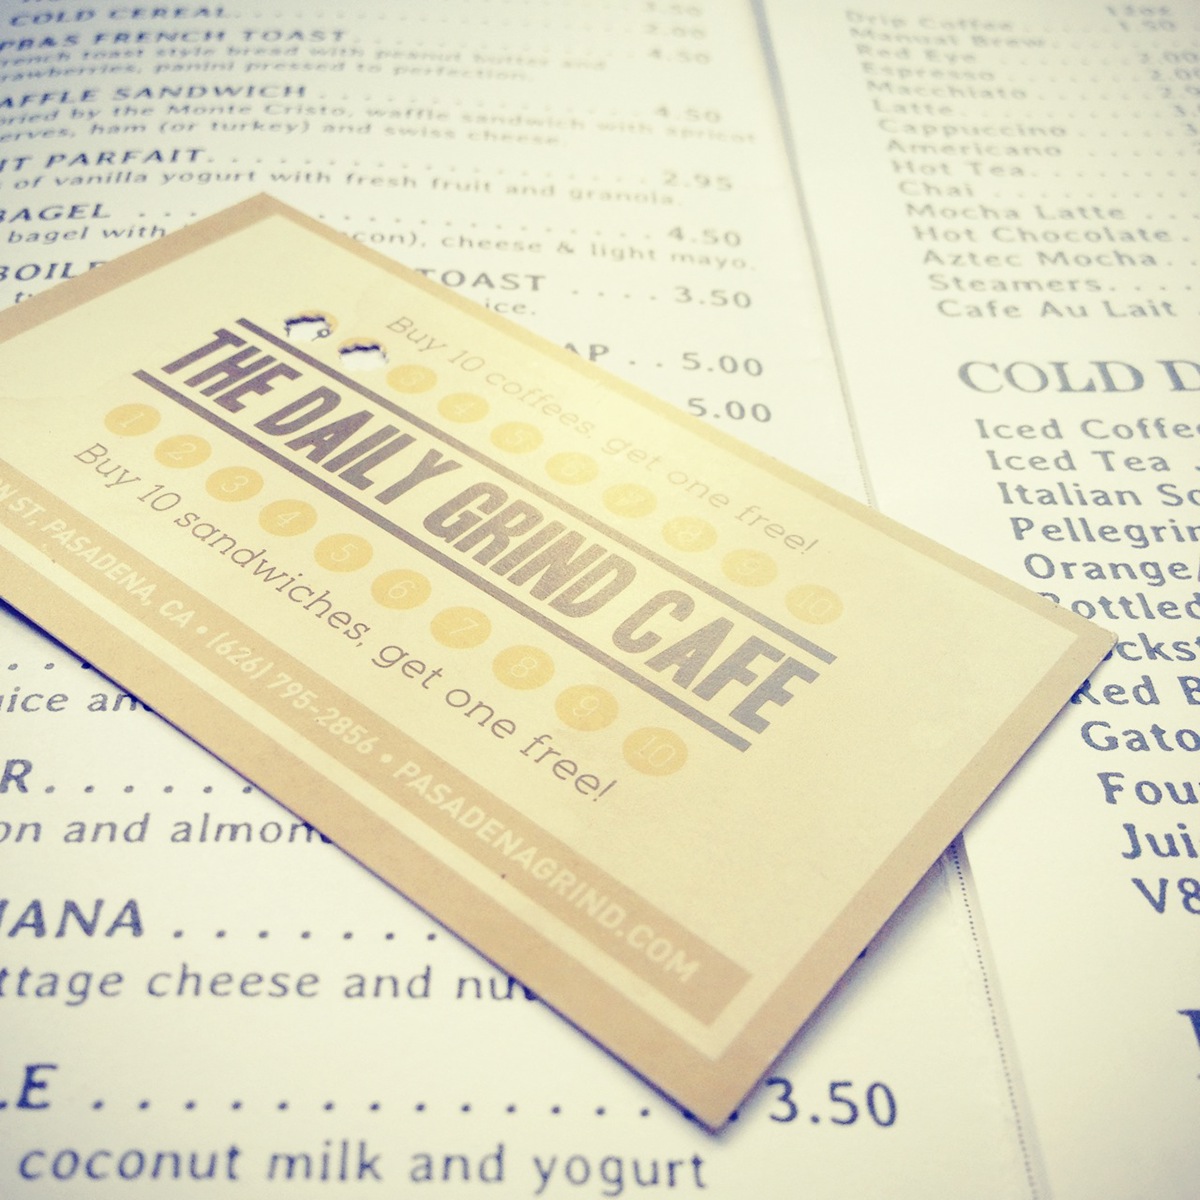 coffee shop cafe identity menu punch card flyer